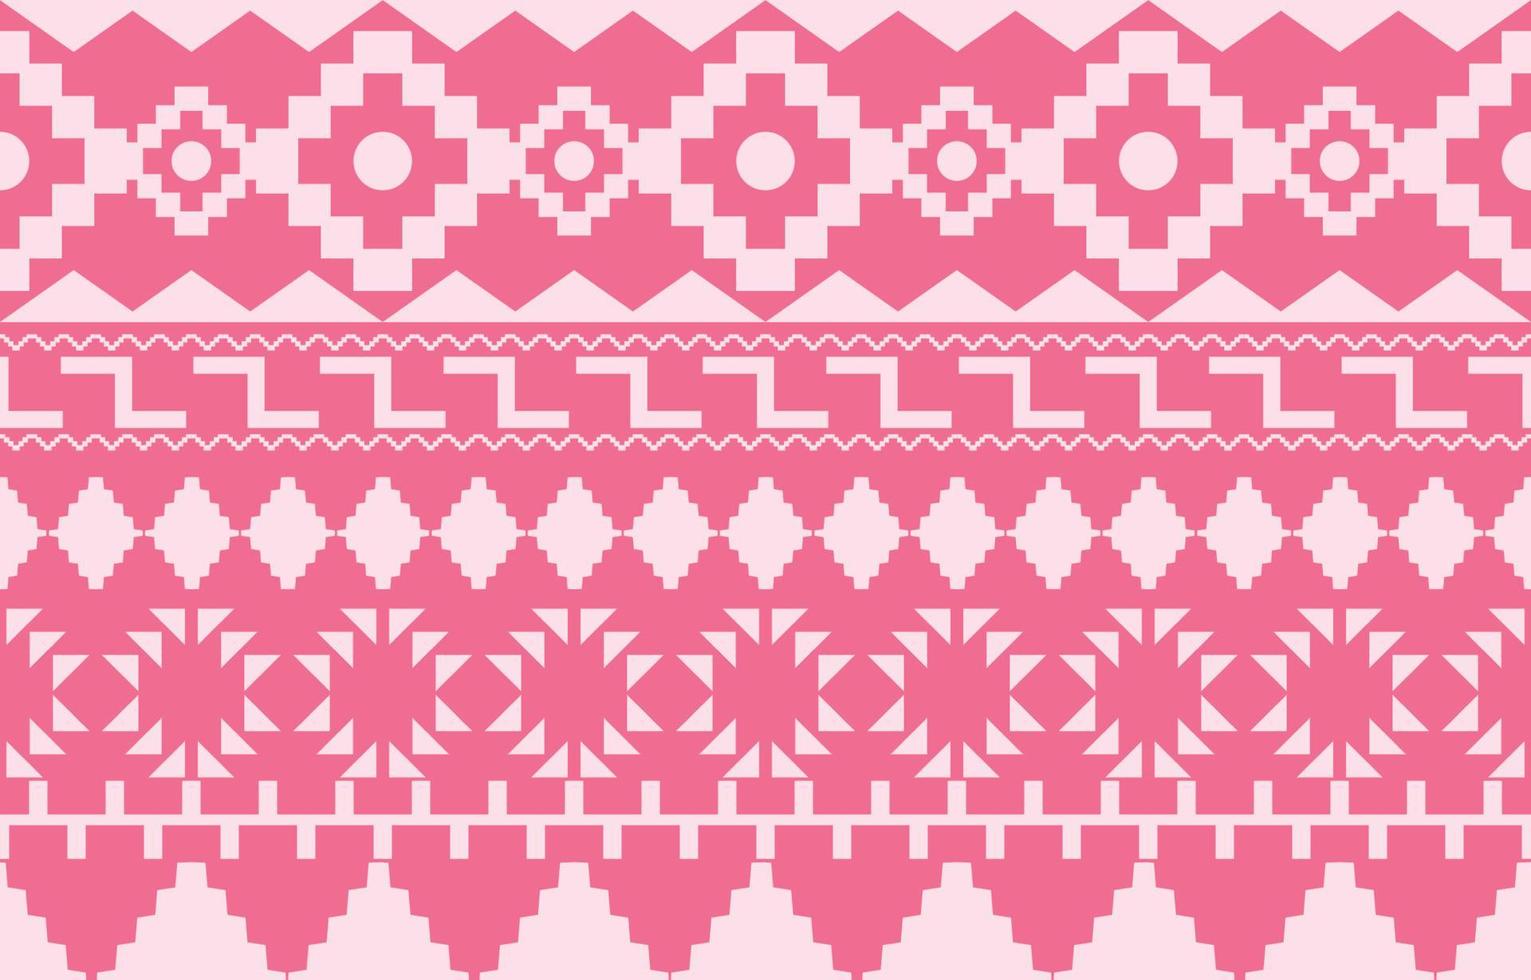 motif ethnique tribal oriental géométrique conception de fond traditionnelle pour tapis, papier peint, vêtements, emballage, batik, tissu, style de broderie d'illustration vectorielle. vecteur